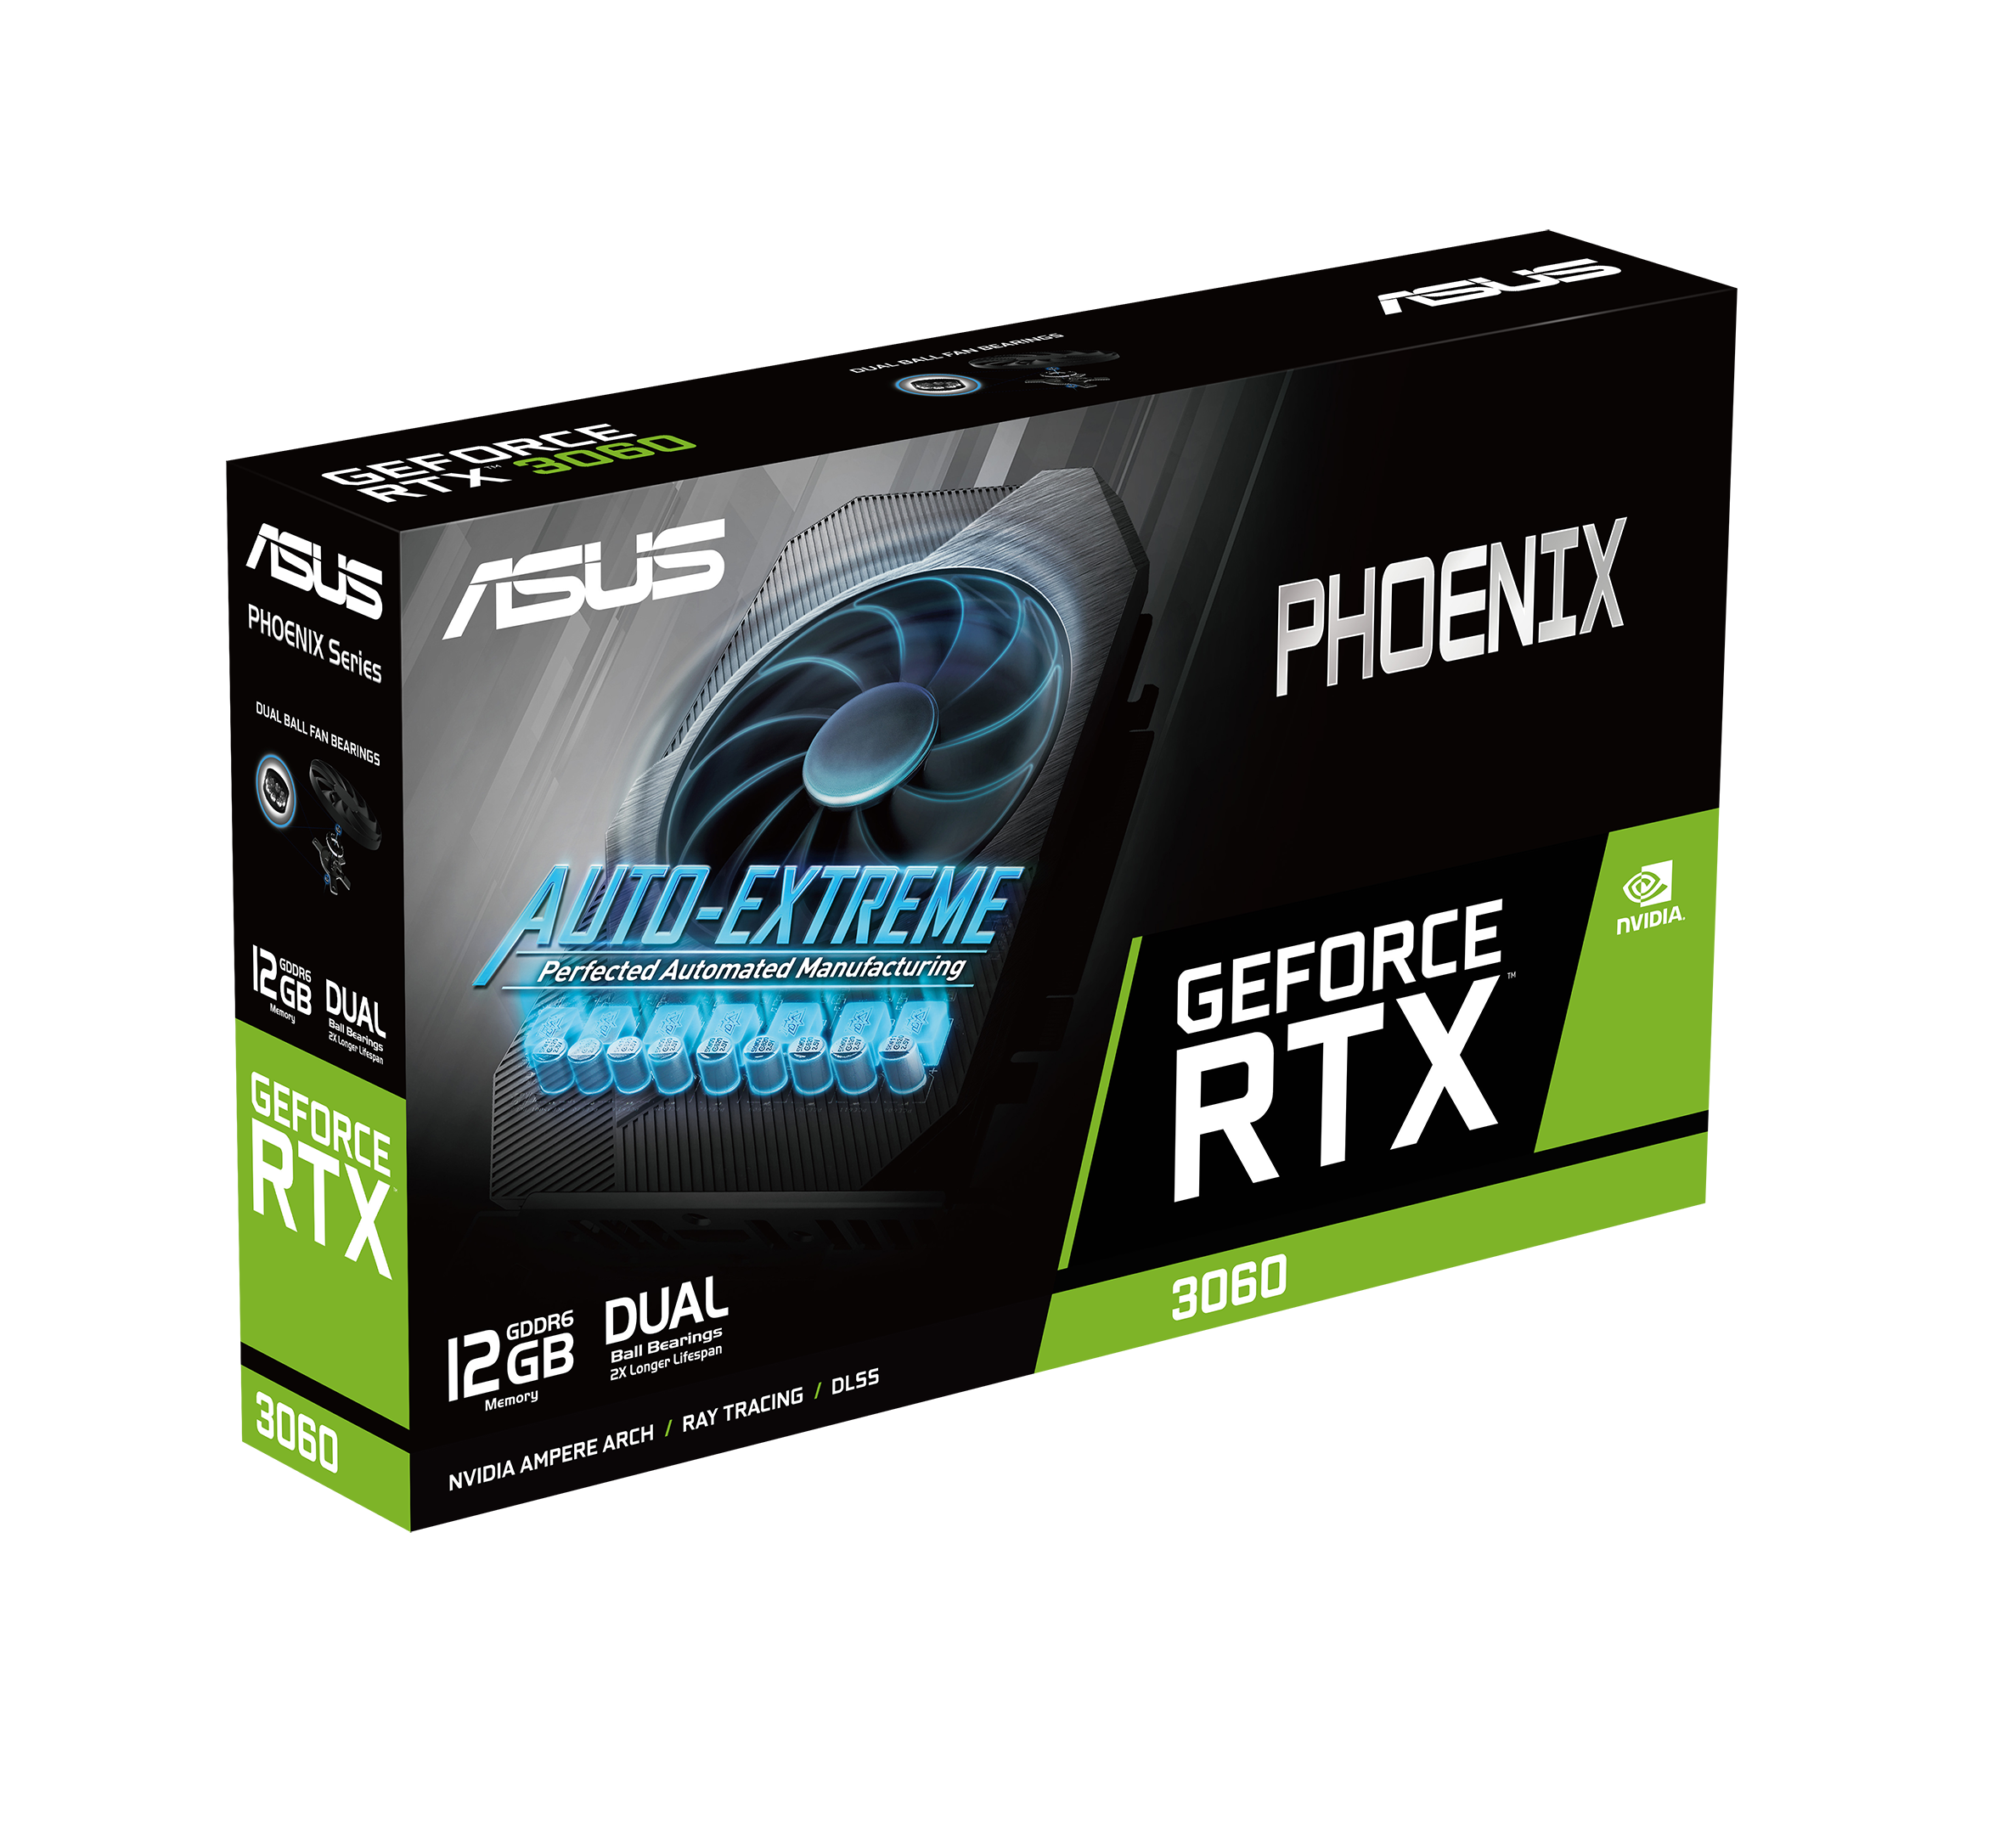 Geforce 3060 phoenix. Видеокарта ASUS Phoenix GEFORCE RTX 3060 v2 12gb (PH-rtx3060-12g-v2). ASUS Phoenix RTX 3050. ASUS Phoenix RTX 3060 12 GB. RTX 3060 12gb gddr6.